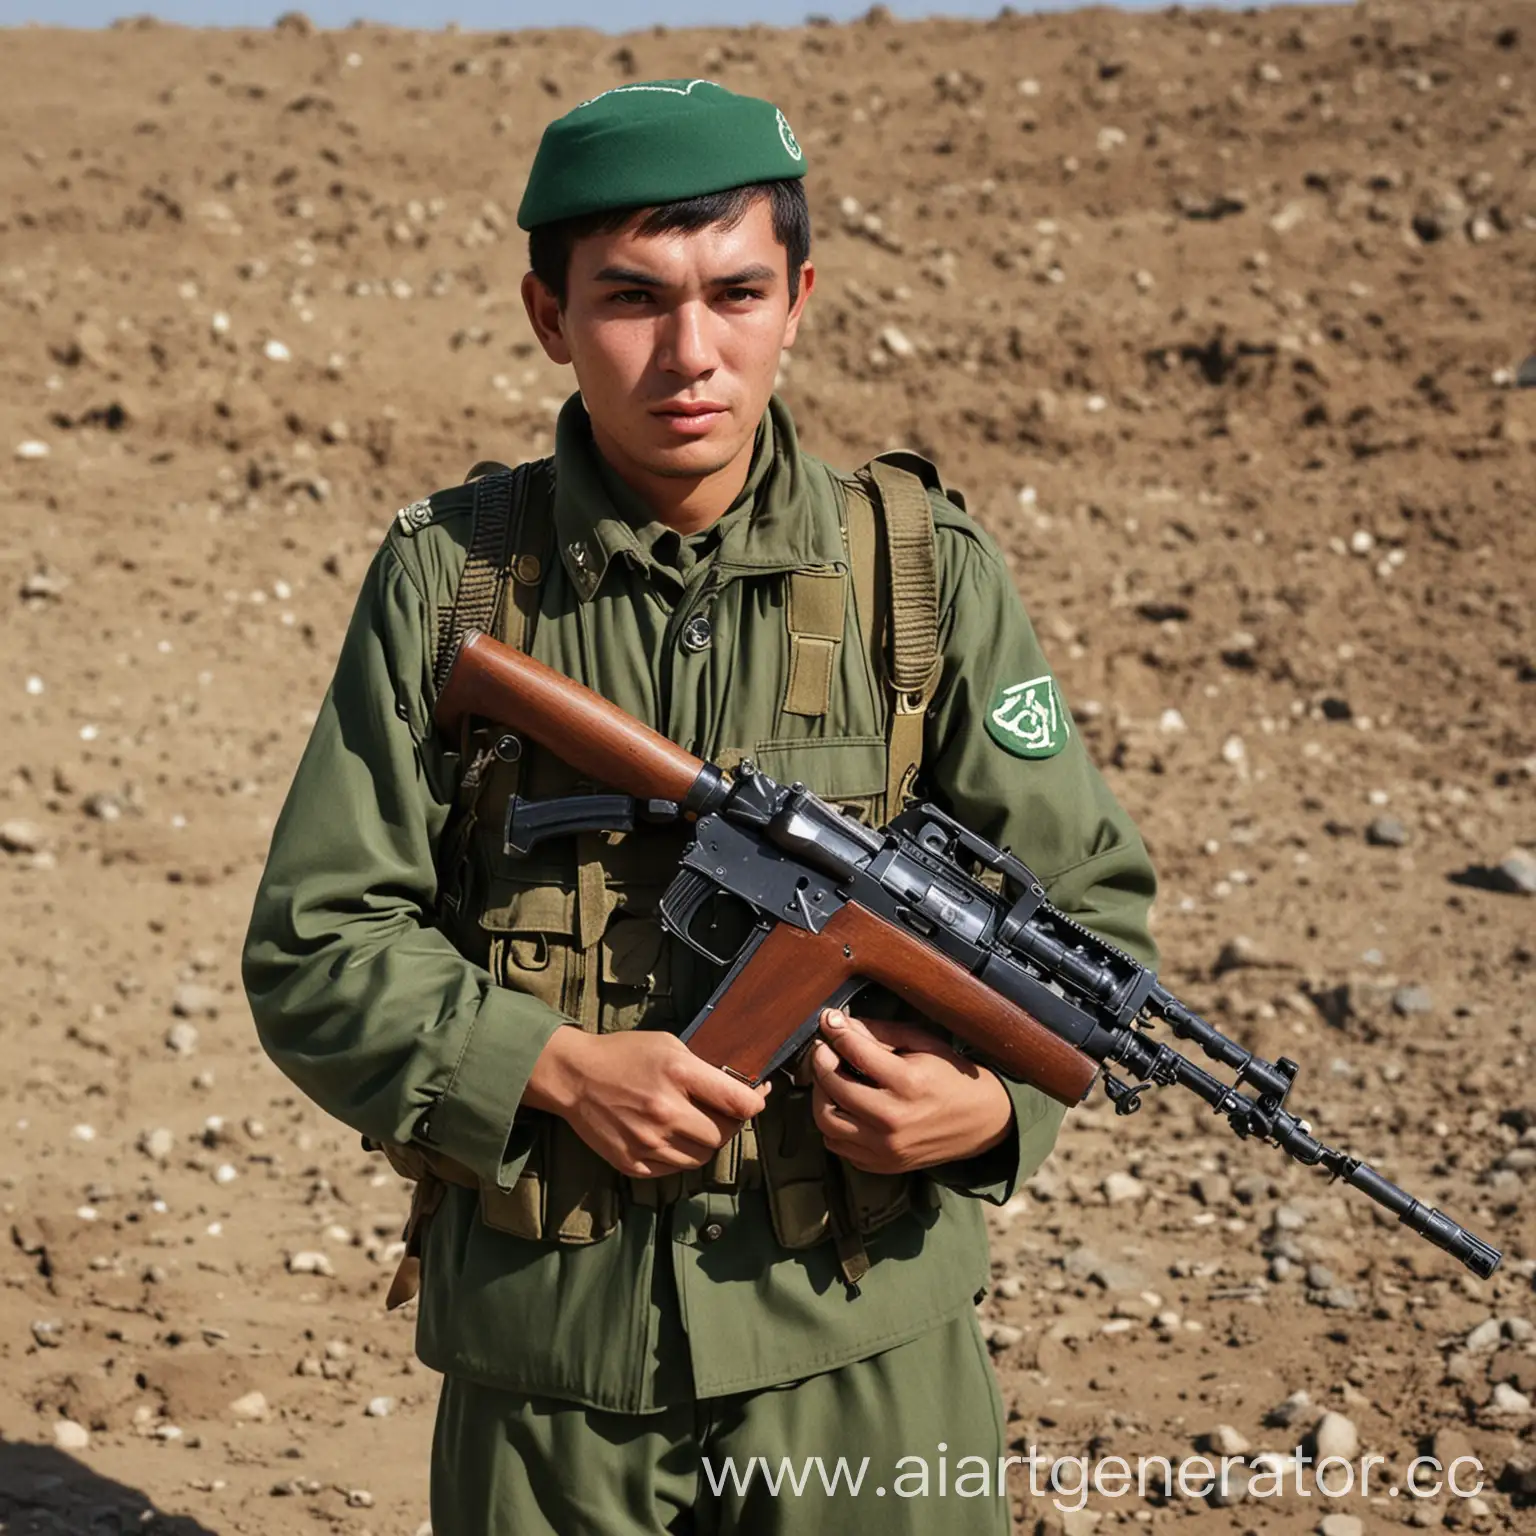 узбекский солдат 1970 года с автоматом